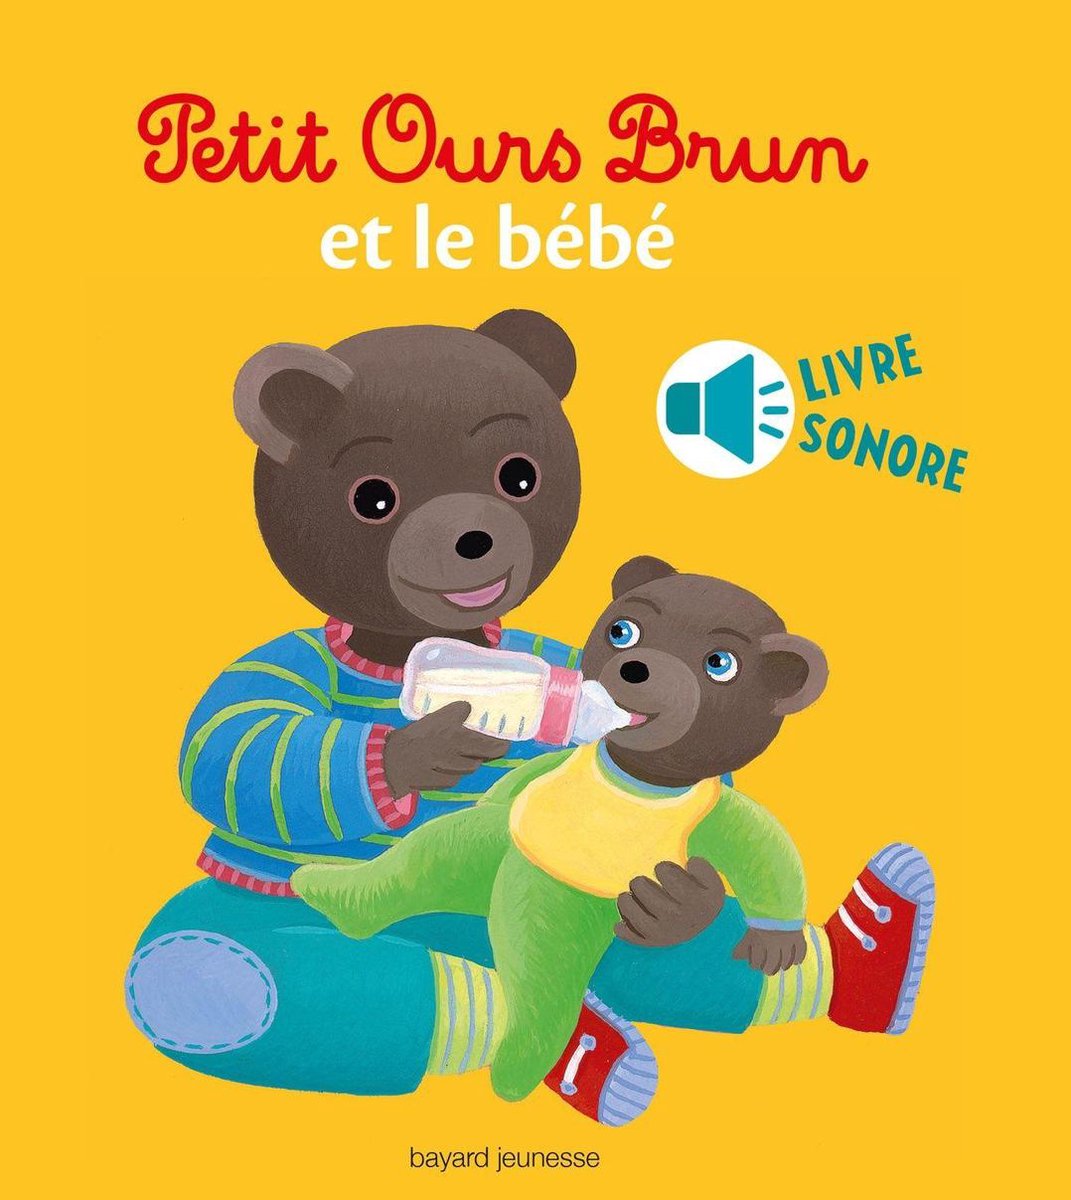 Bol Com Petit Ours Brun Et Le Bebe Livre Sonore Ebook Marie Aubinais Boeken